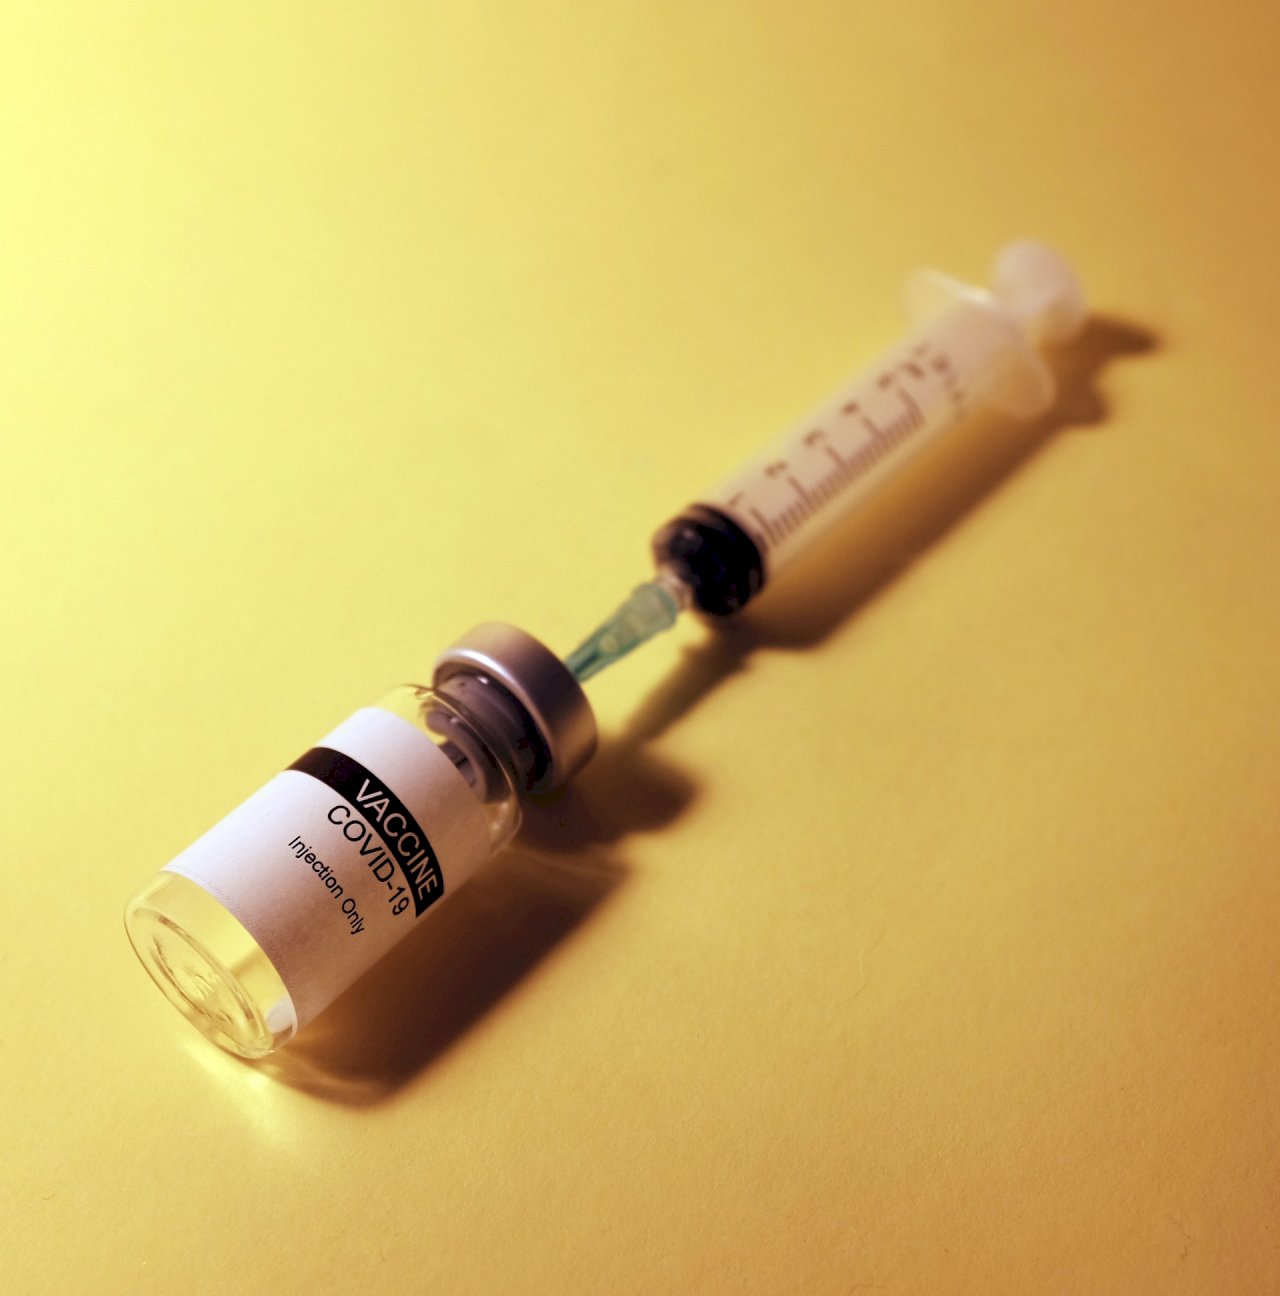 巴西孕婦兒童要防流感 竟被錯打COVID-19疫苗